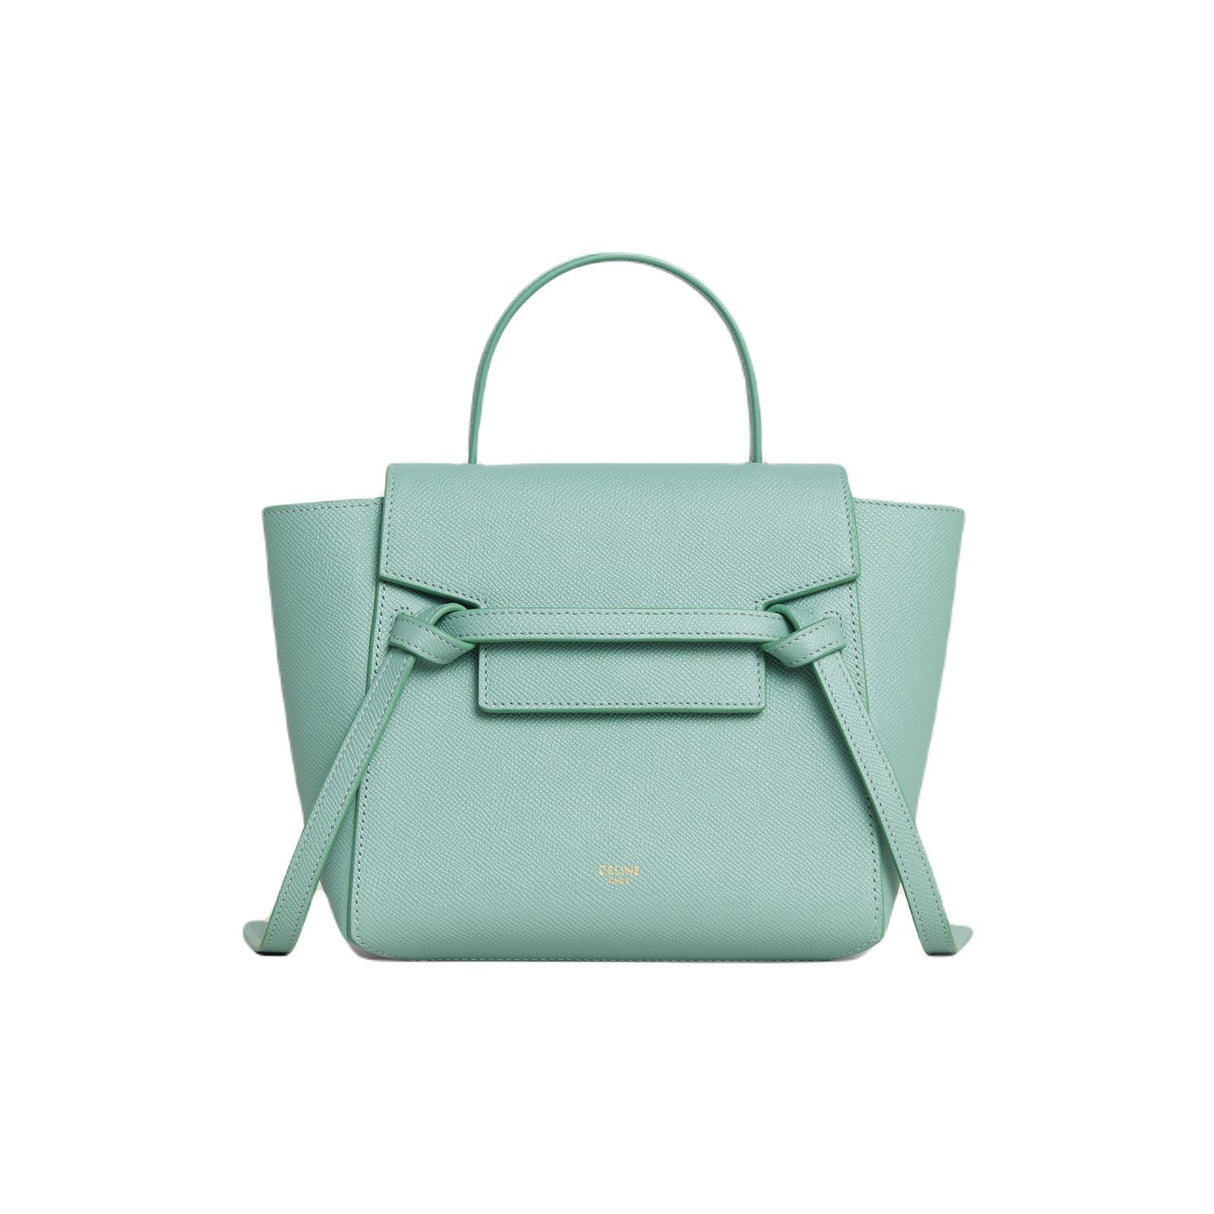 CELINE Elegant Top-Handle Handbag in Ice Mint for Women - FW22 Collection